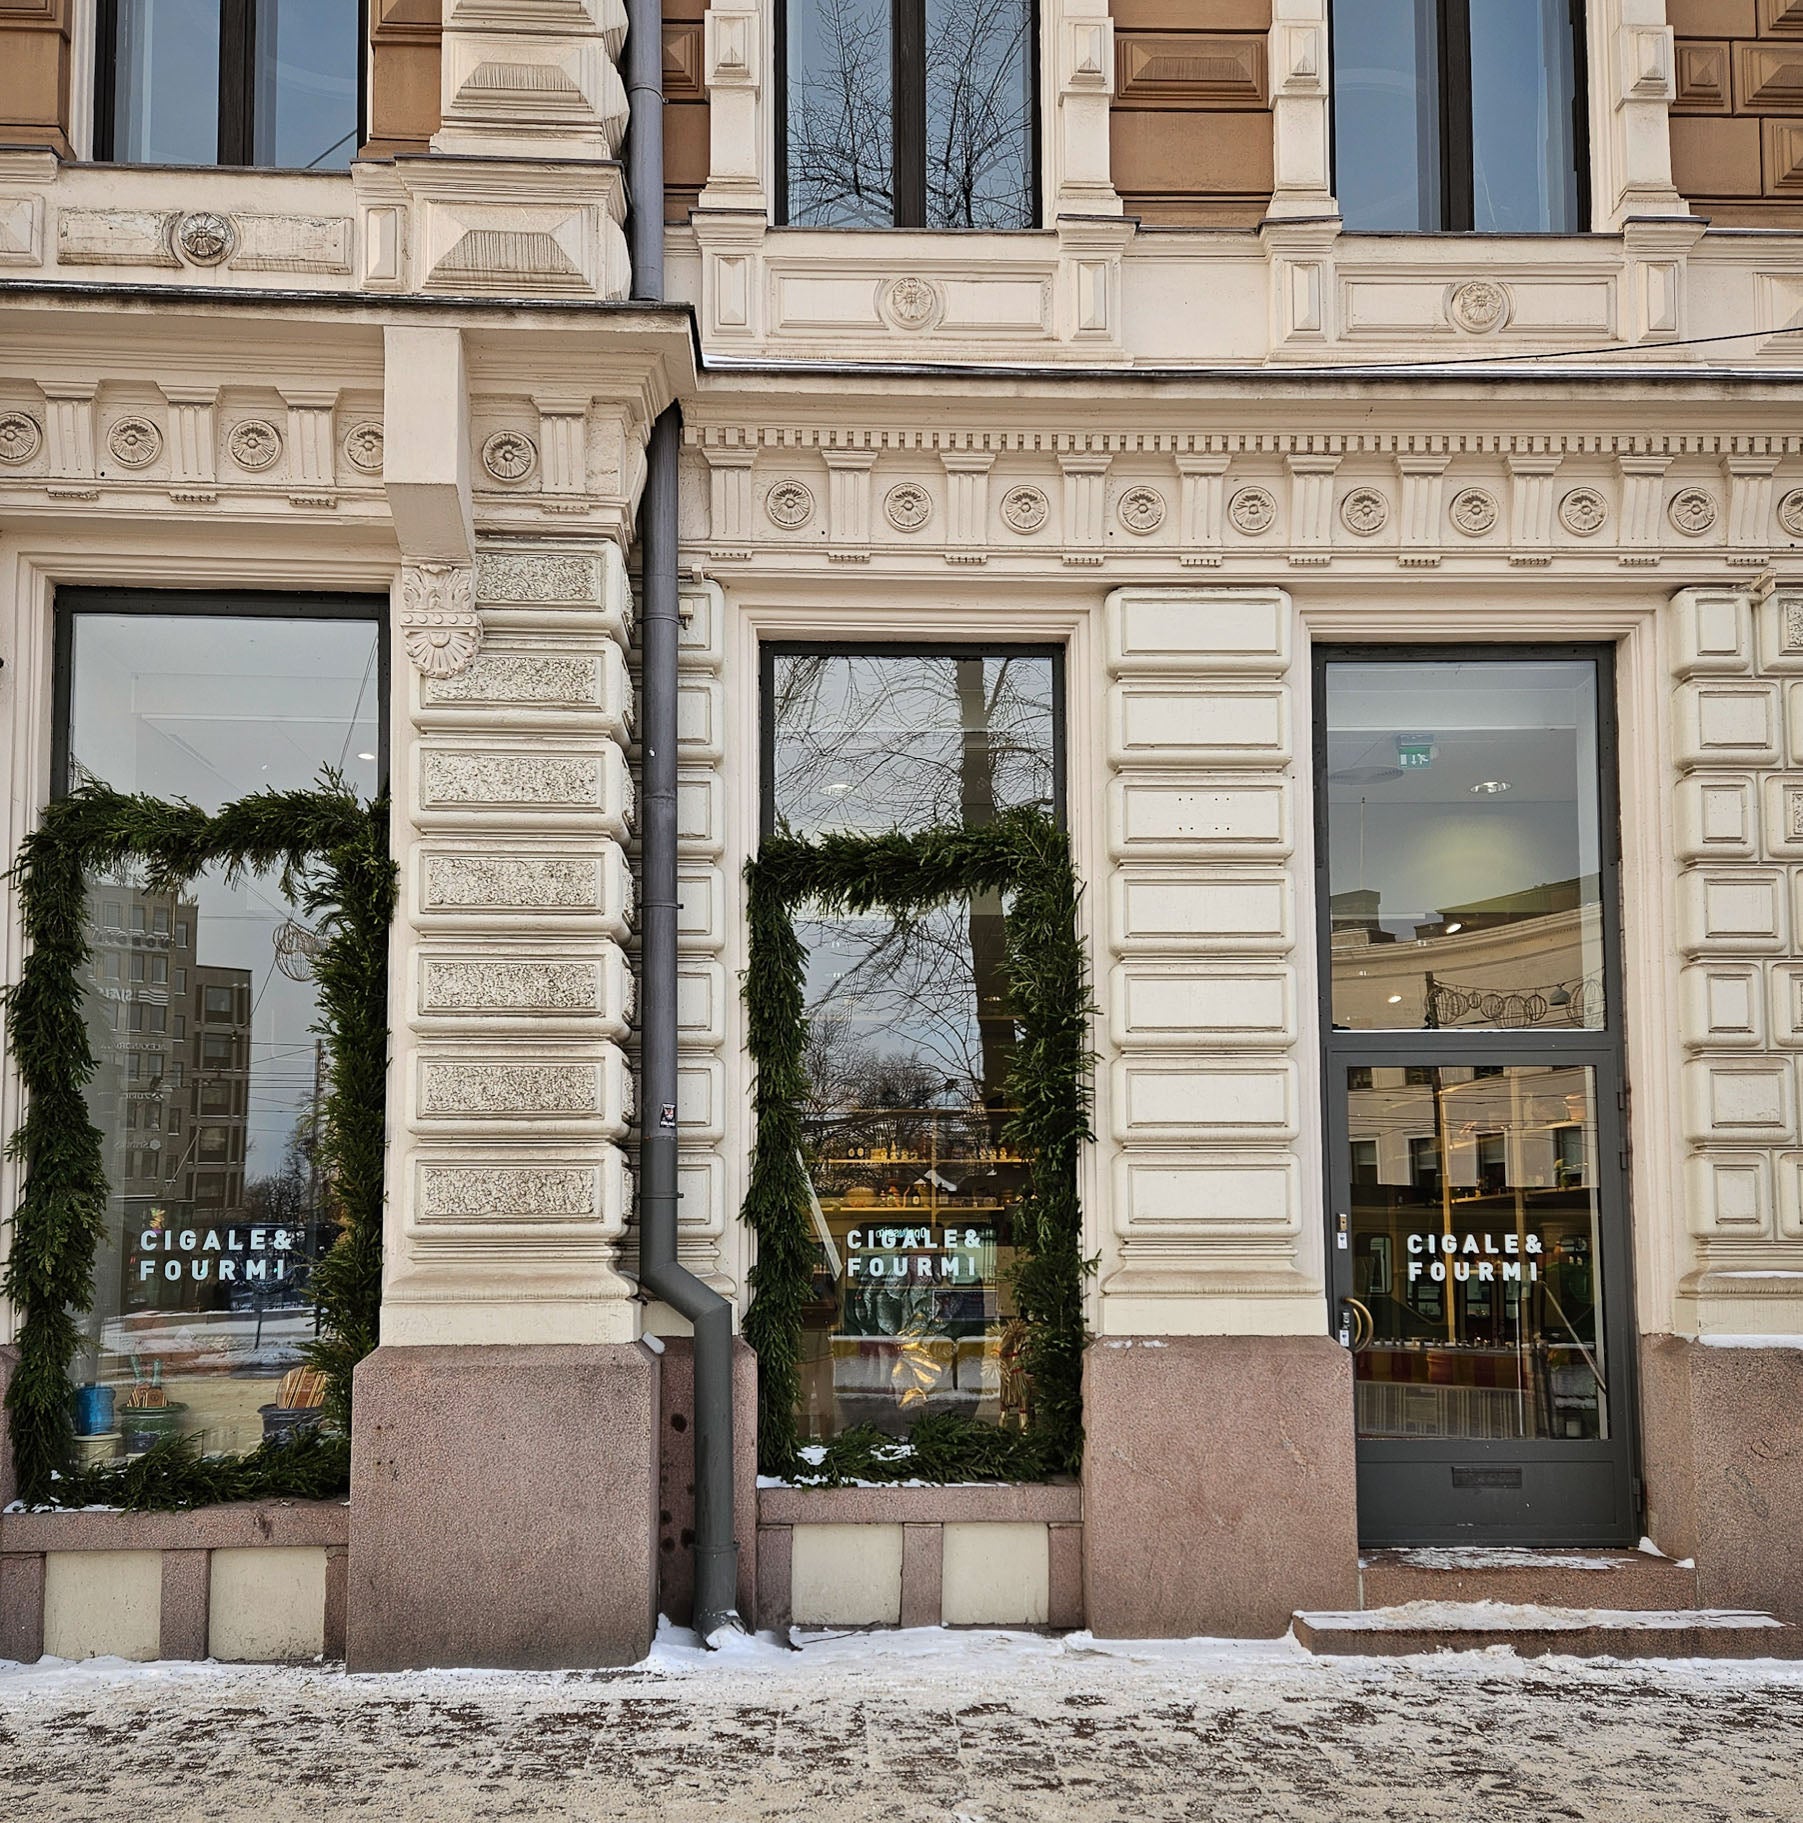 Cigale & Fourmi store in Helsinki